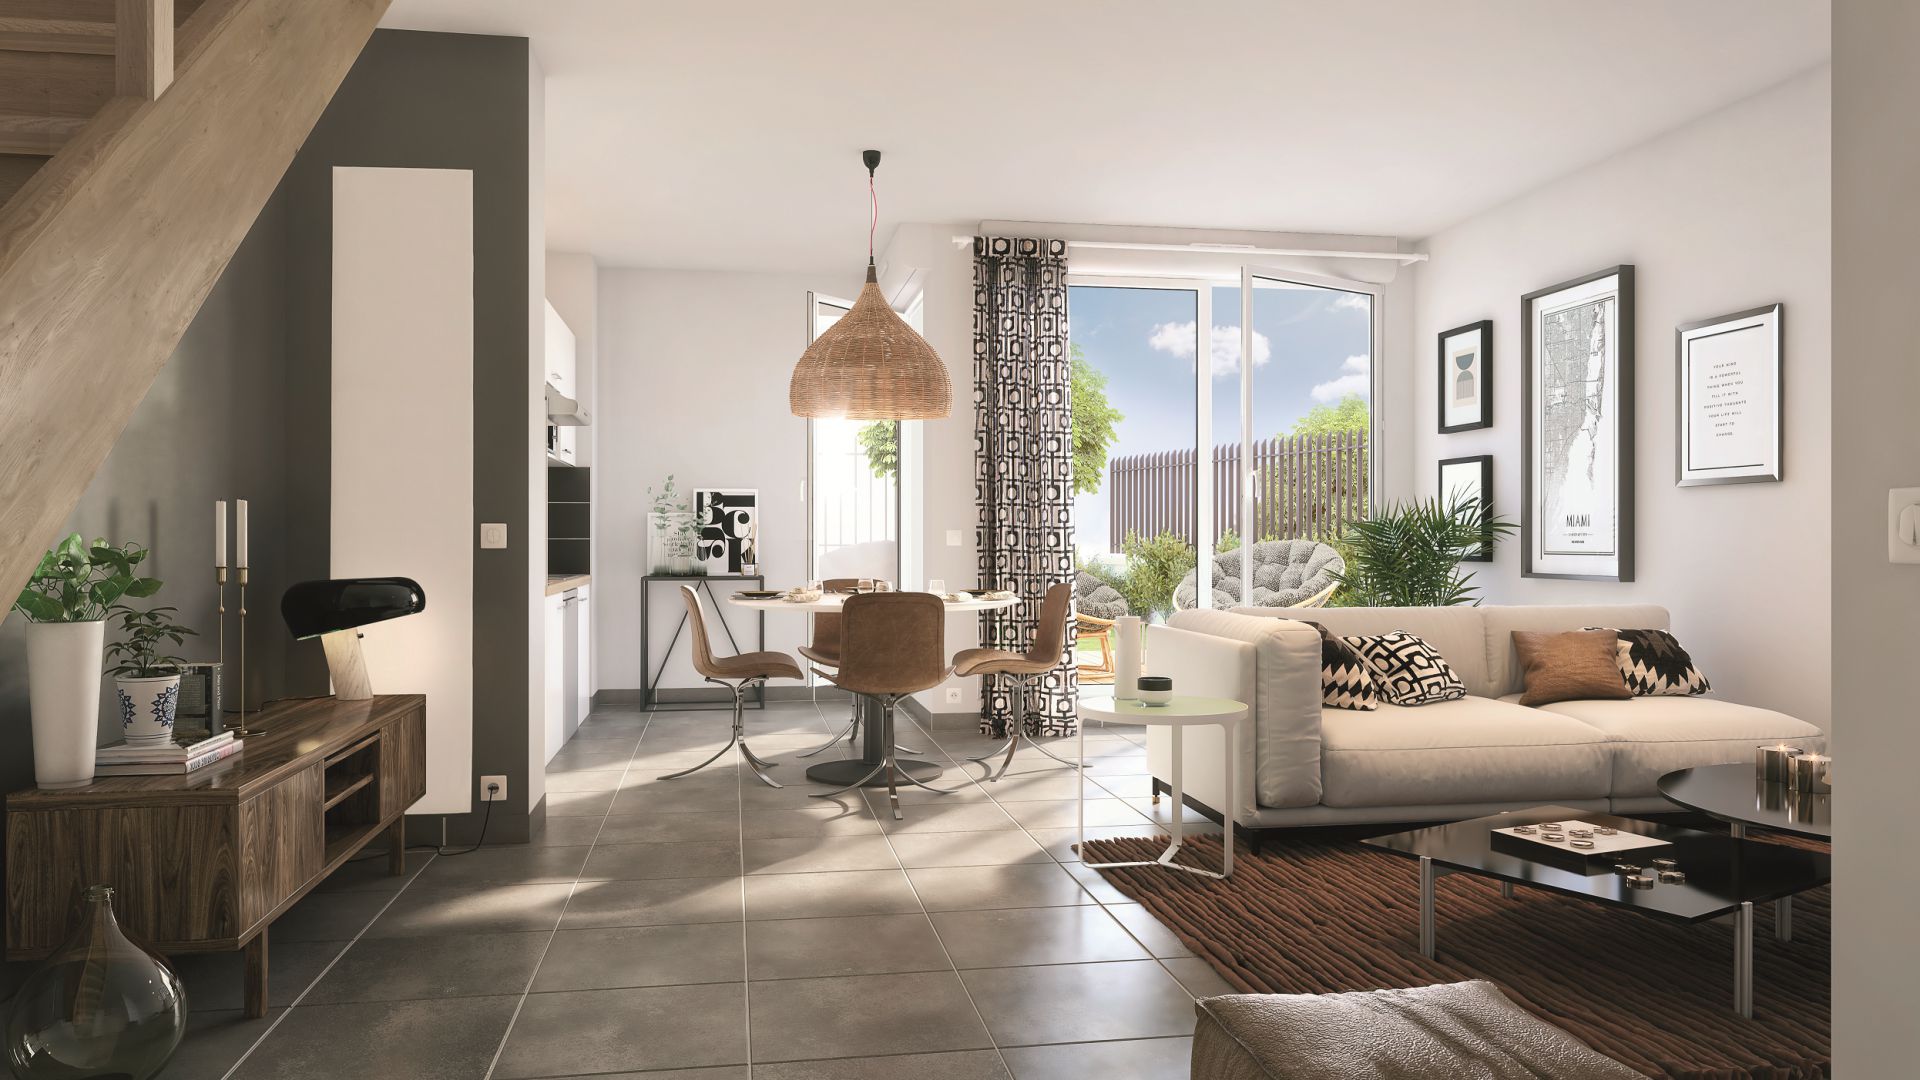 GreenCity immobilier - Saint-Jory - 31790 - Résidence Domaine D'Ophélia - appartements neufs du T2 au T4 et villas T3 et T5   - intérieur villa T3